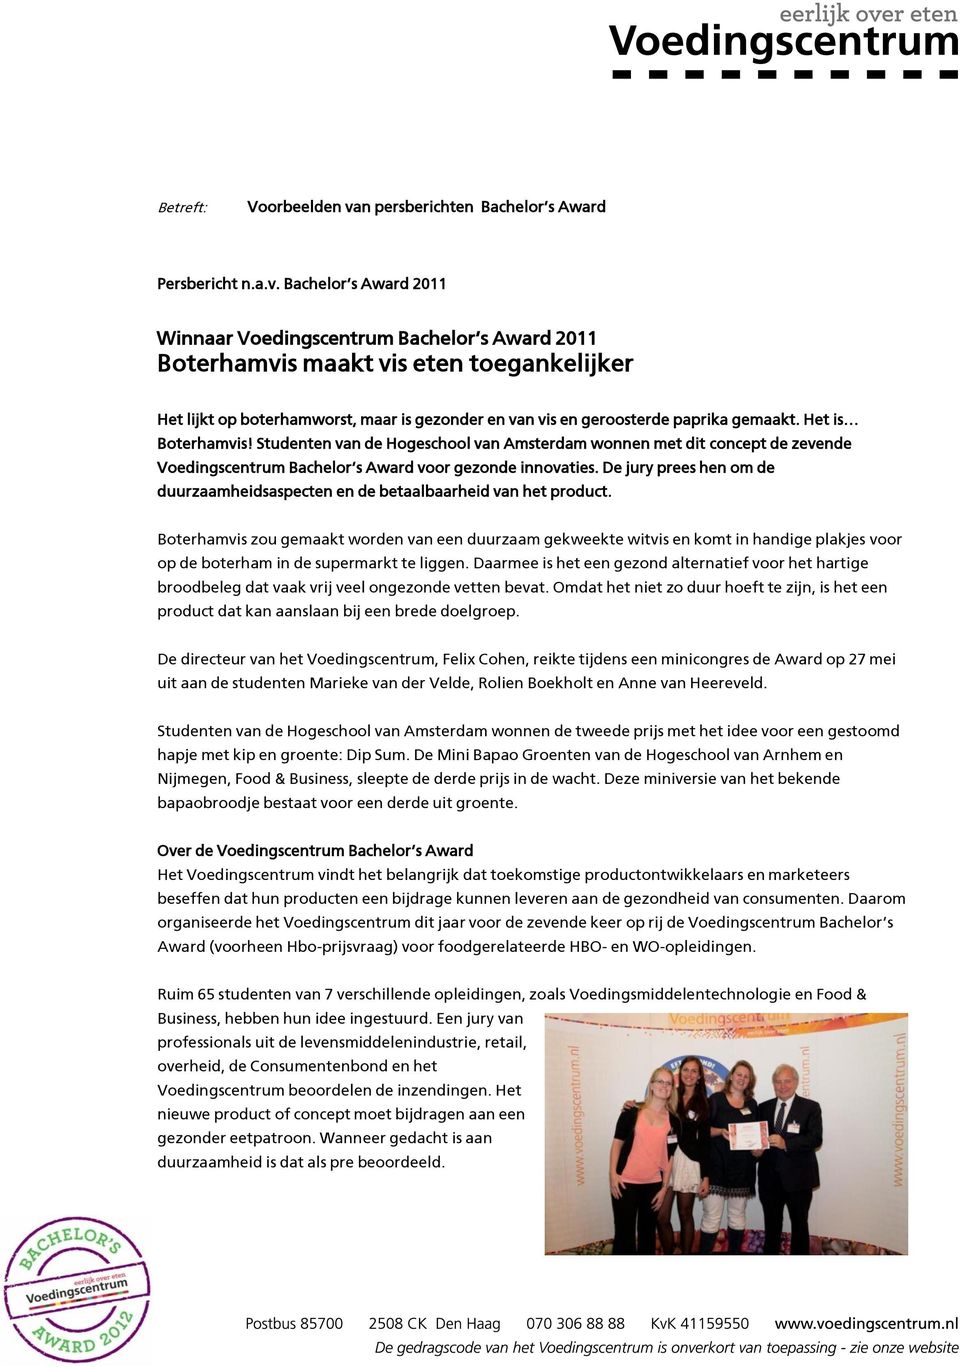 Het is Boterhamvis! Studenten van de Hogeschool van Amsterdam wonnen met dit concept de zevende Voedingscentrum Bachelor s Award voor gezonde innovaties.